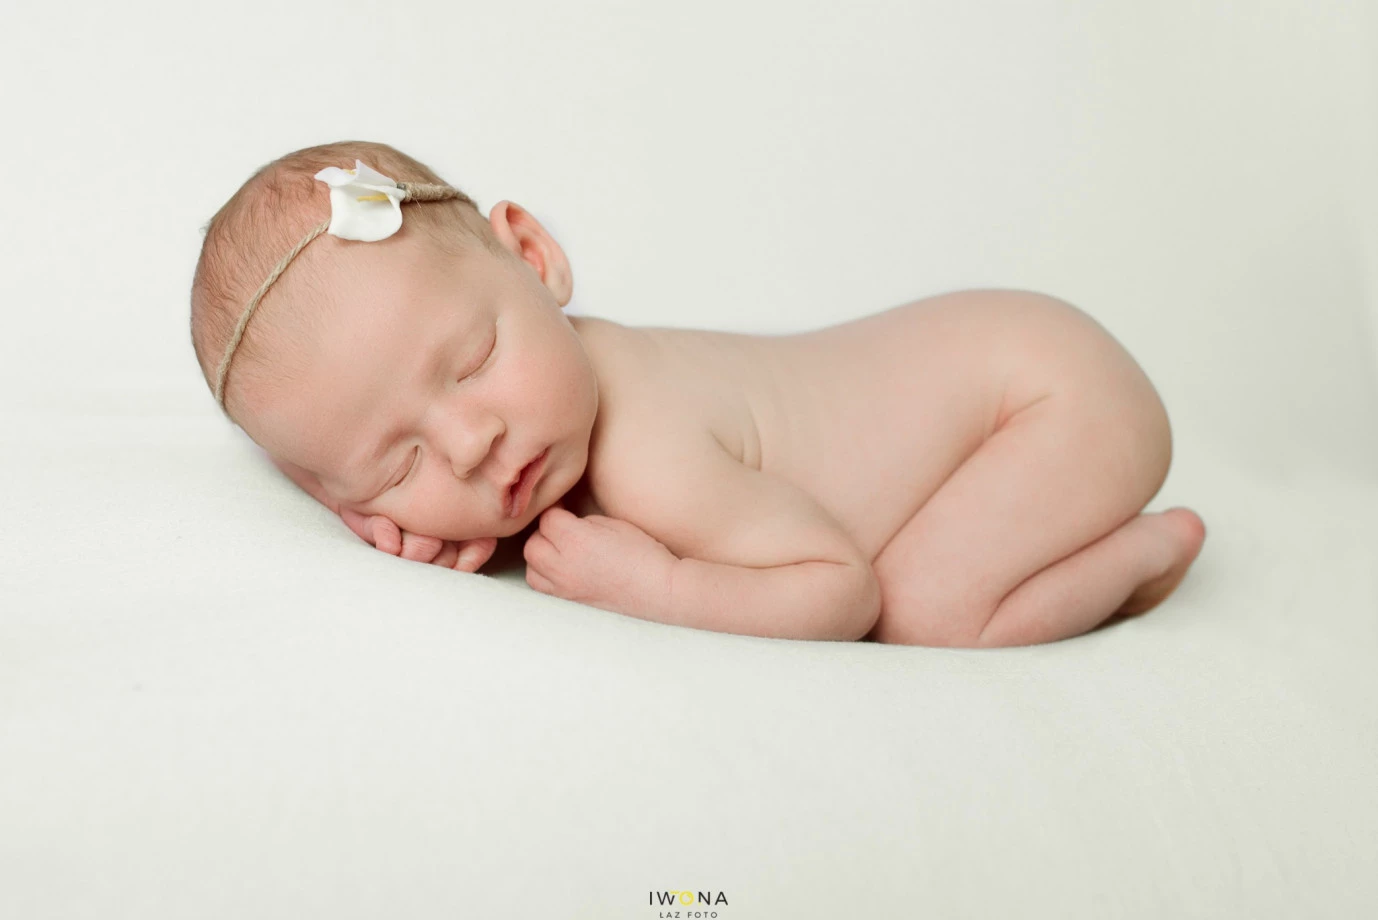 fotograf borki-nizinskie iwona-laz-foto portfolio zdjecia noworodkow sesje noworodkowe niemowlę